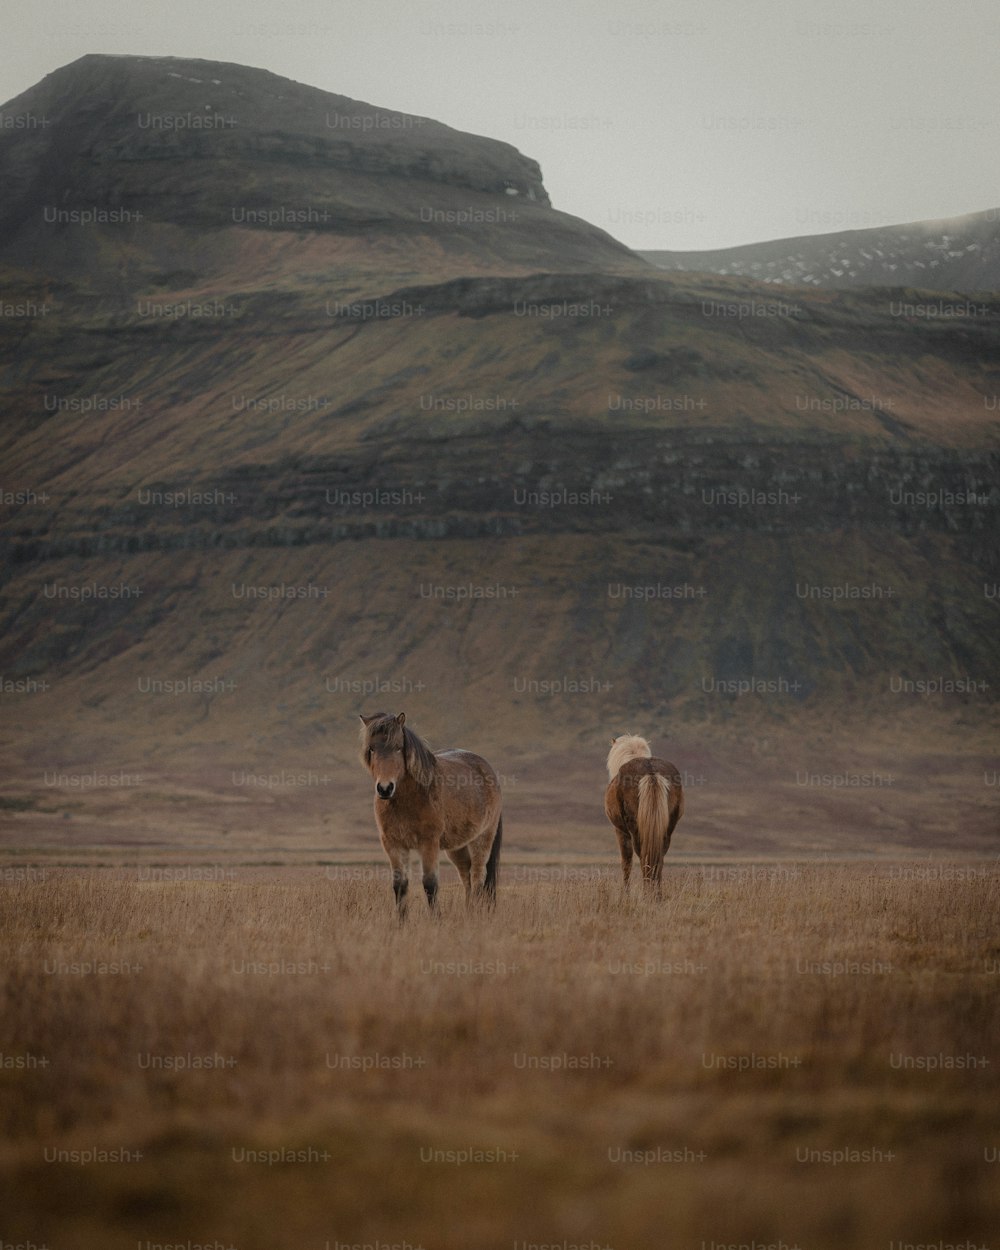 마른 풀밭 위에 서 있는 두 마리의 말